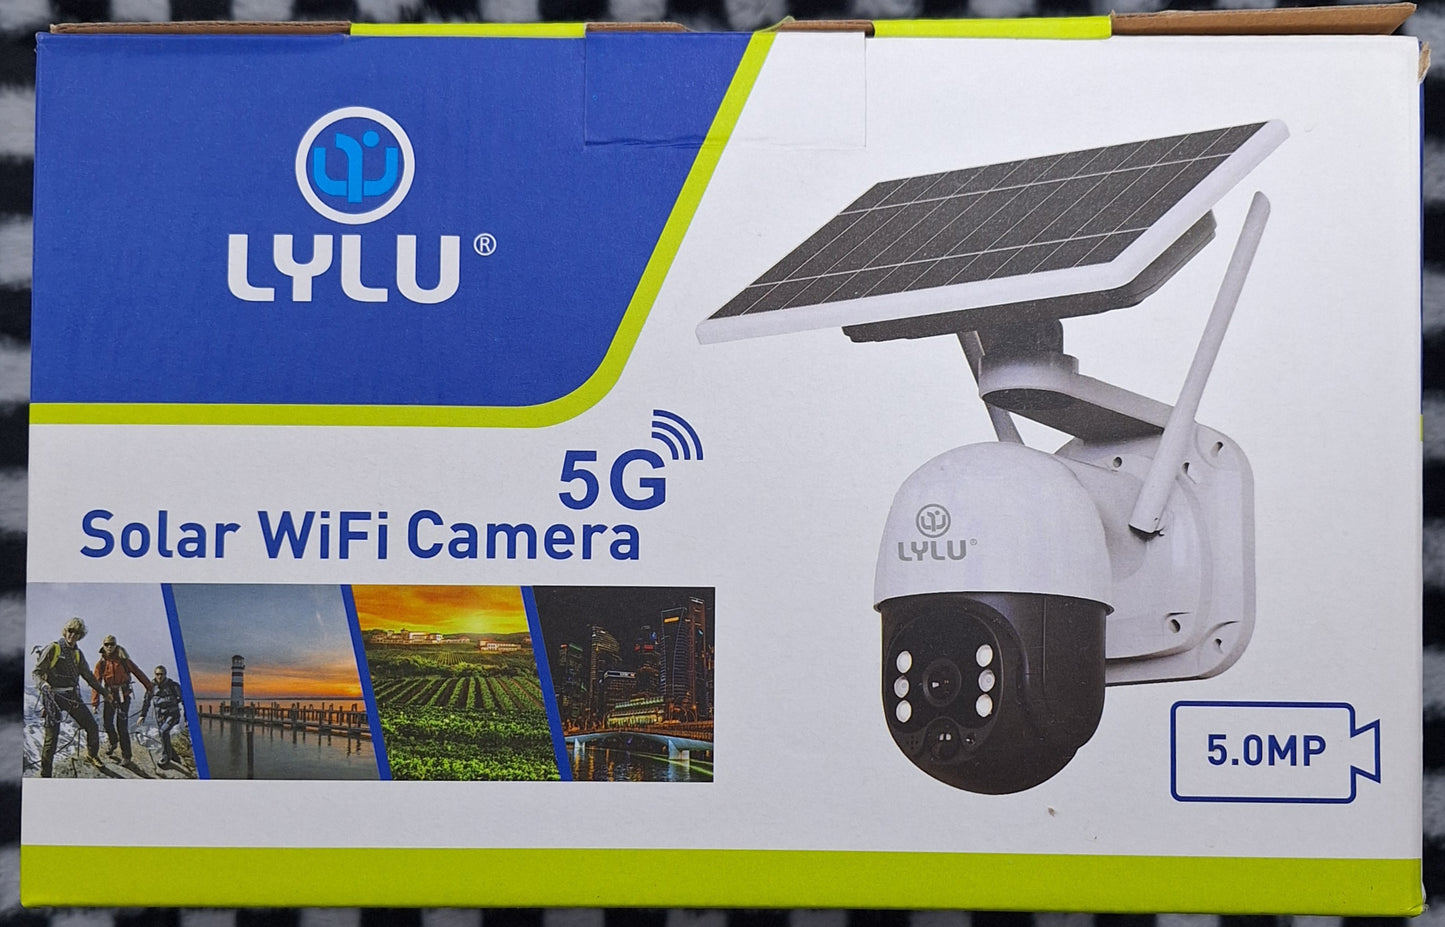 Lylu 5G Solar WiFi Camera